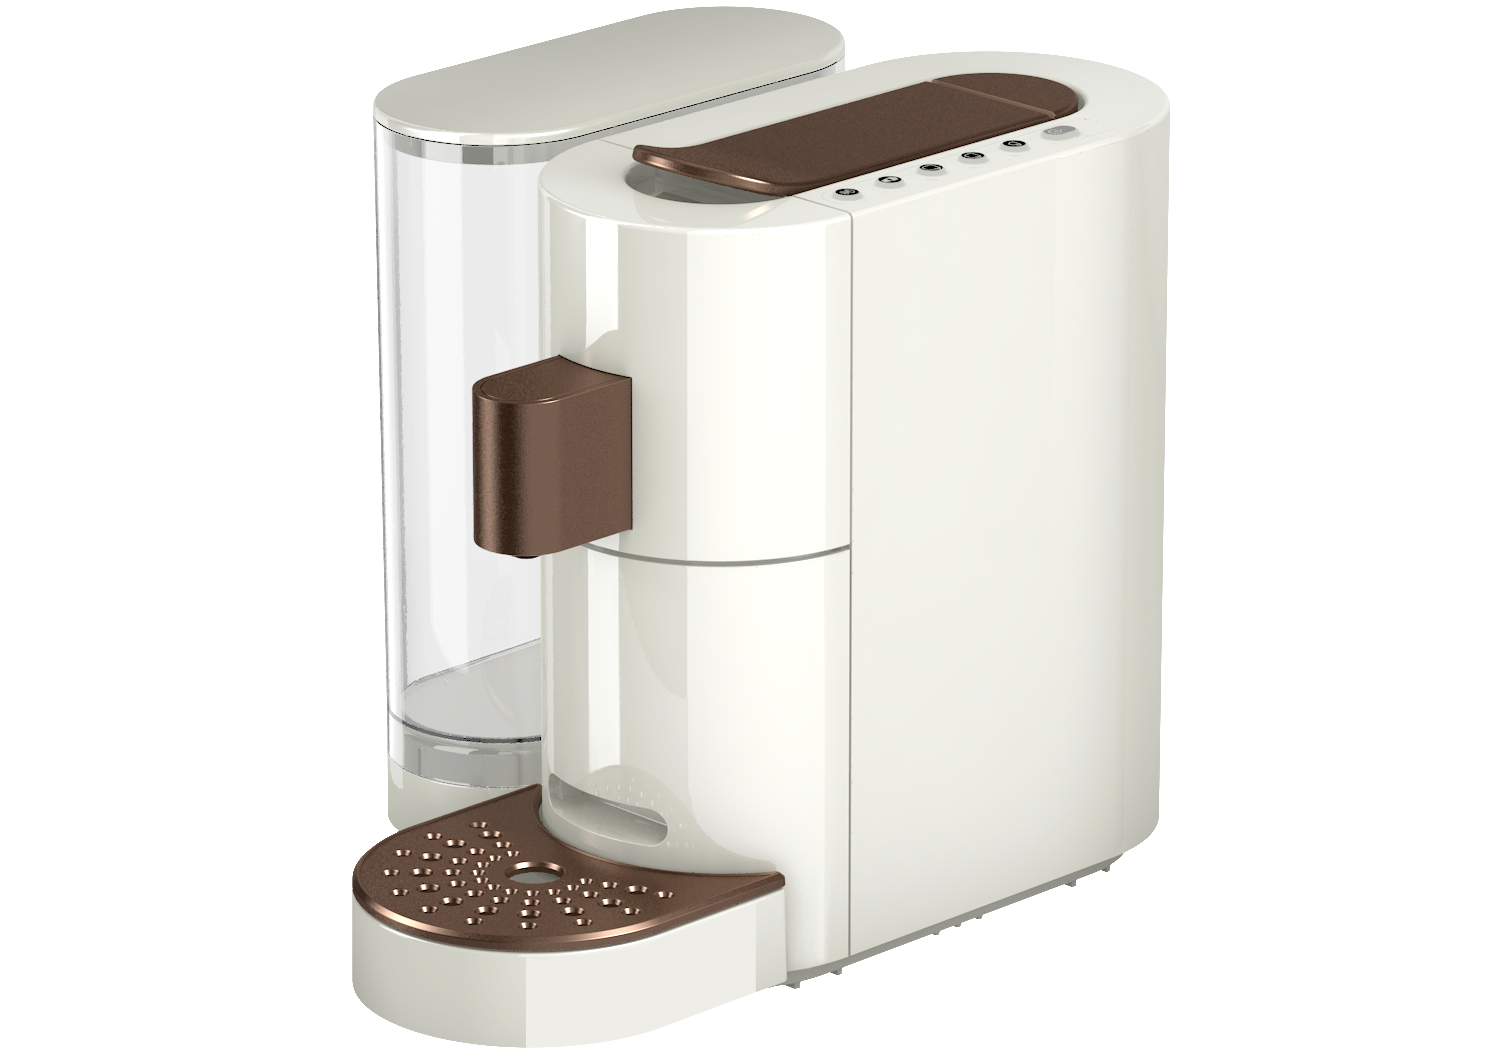 K-fee One Verismo Compatible Single Serve 19 Bar Dou-Pressure Coffee/Espresso Machine (Black/Copper)